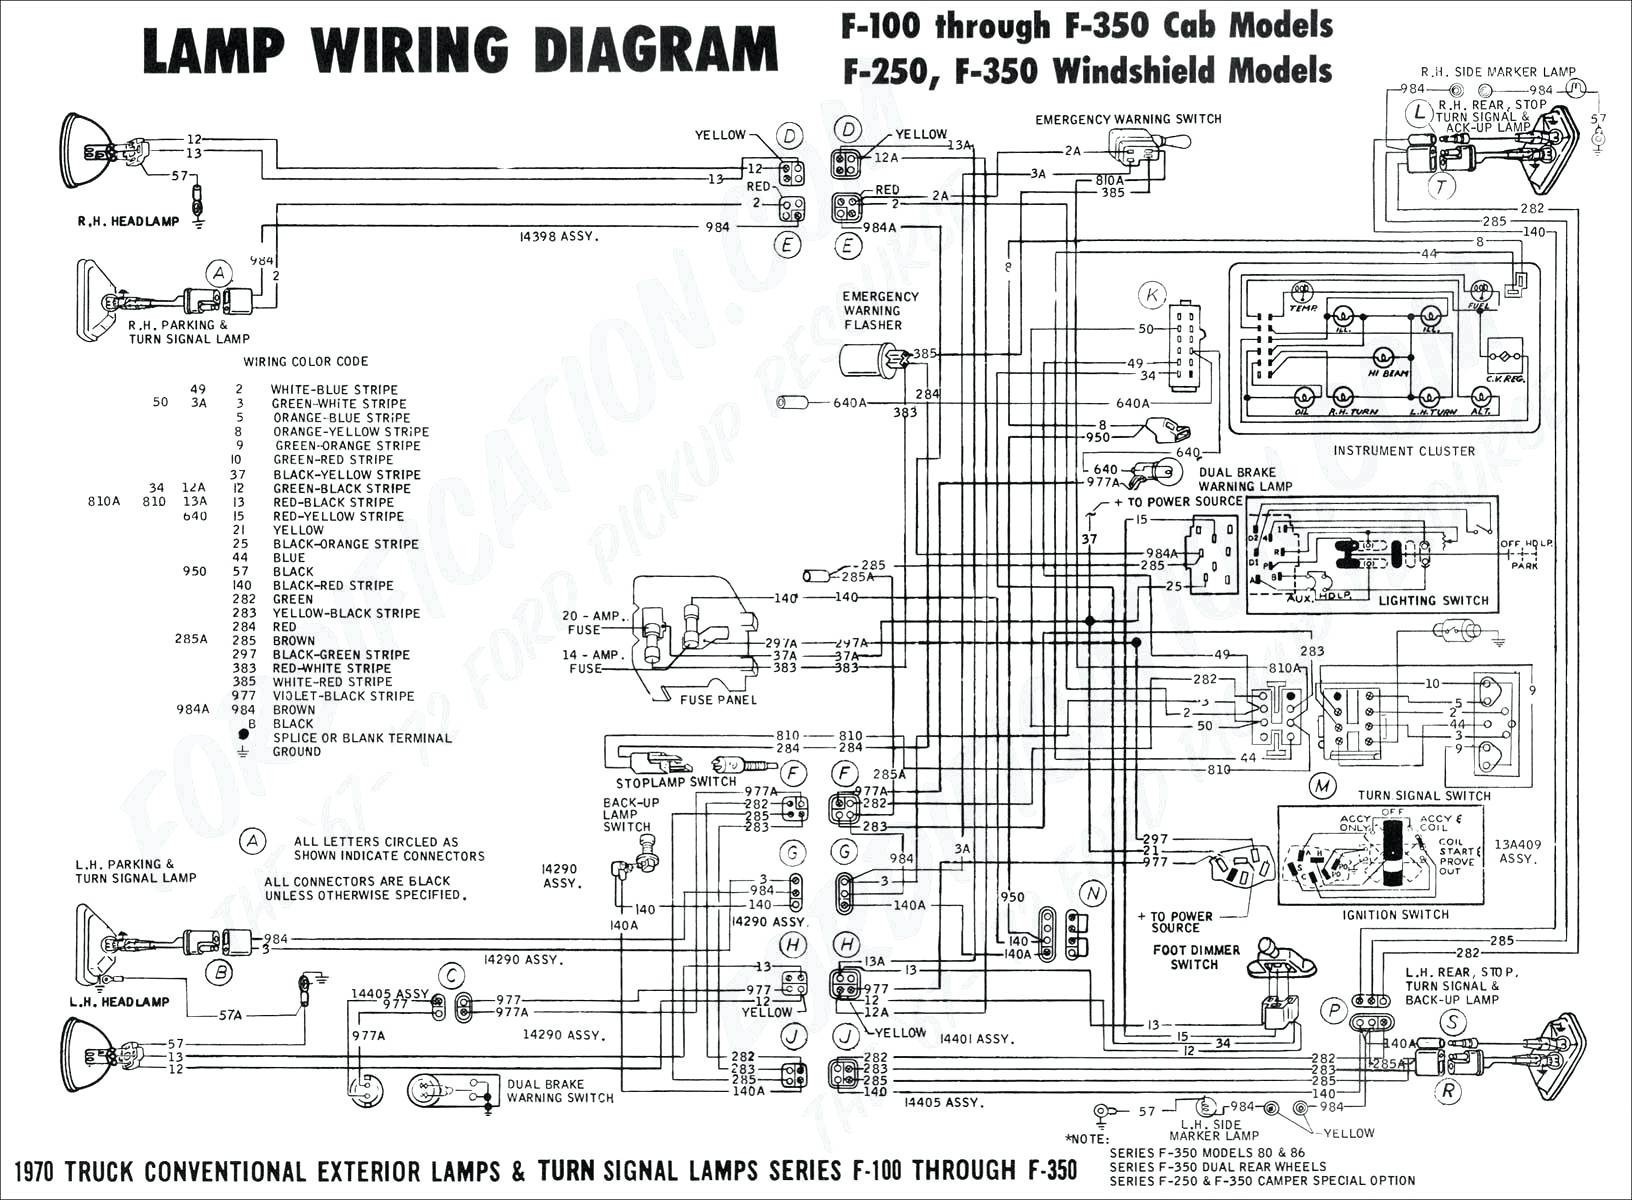 Paragon Timer Wiring Diagram Diagram Timer Carrier Wiring Defrost 38cq660 Wiring Diagram forward Of Paragon Timer Wiring Diagram